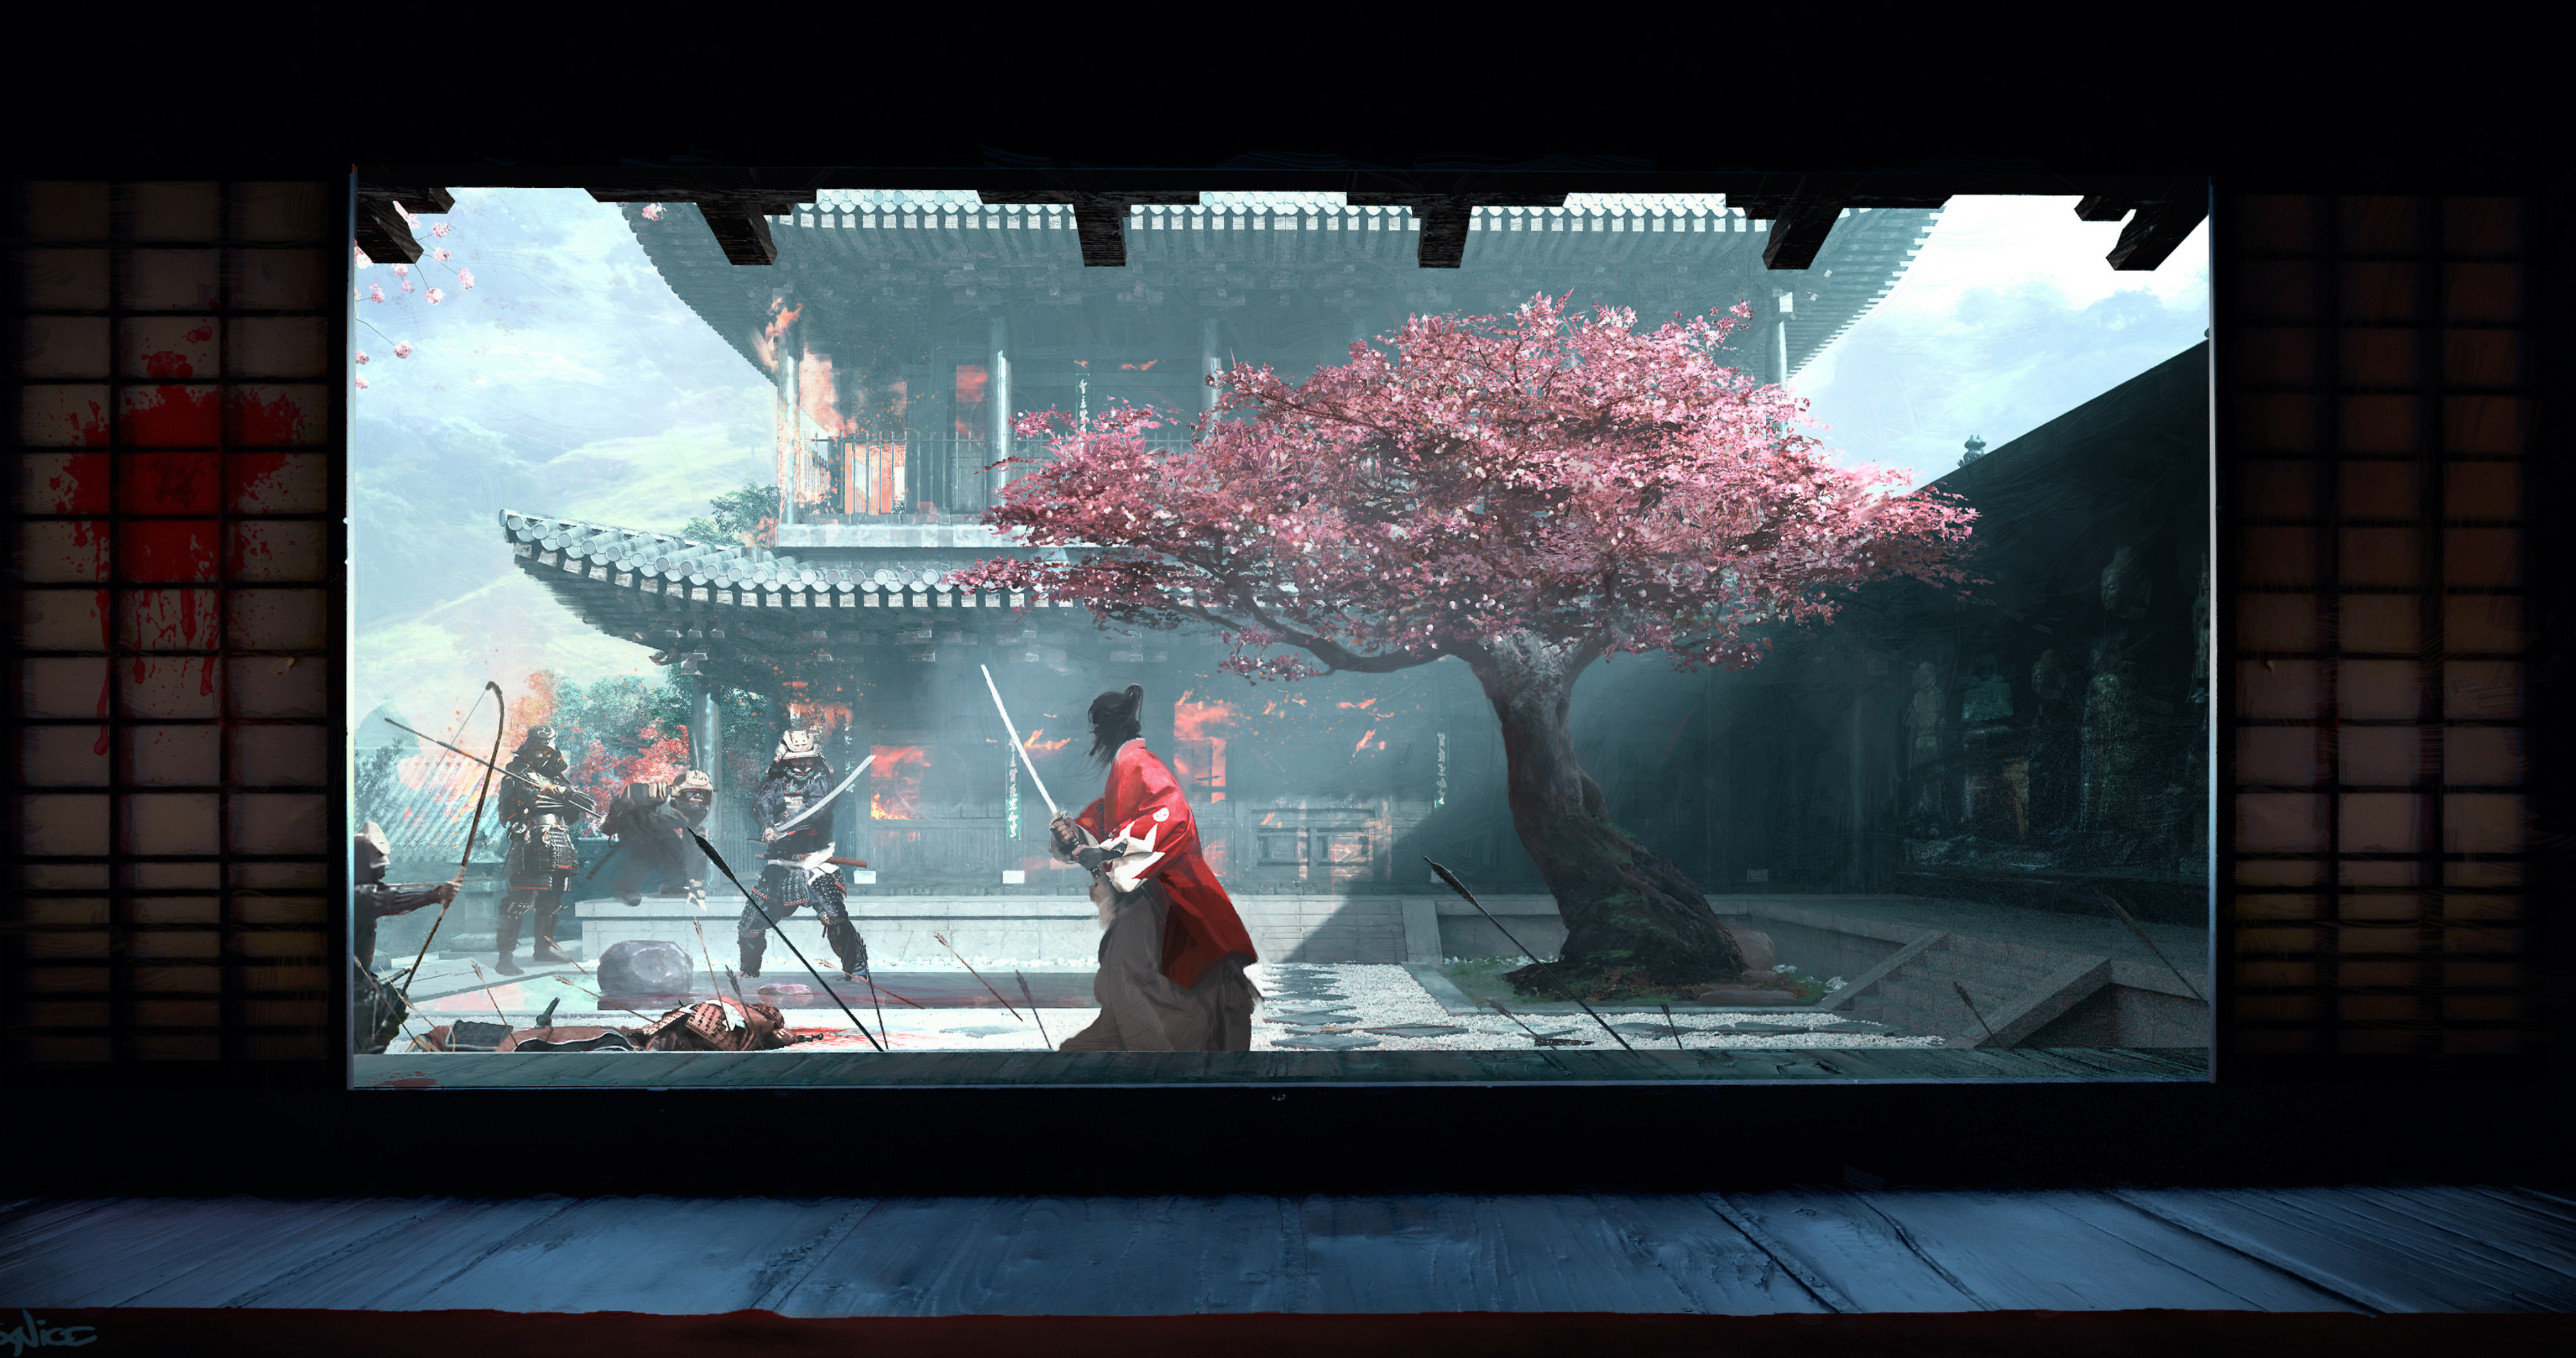 樱花树的院子里拔刀对峙的日本忍者和<span style='color:red;'>武士</span>的场景插画壁纸